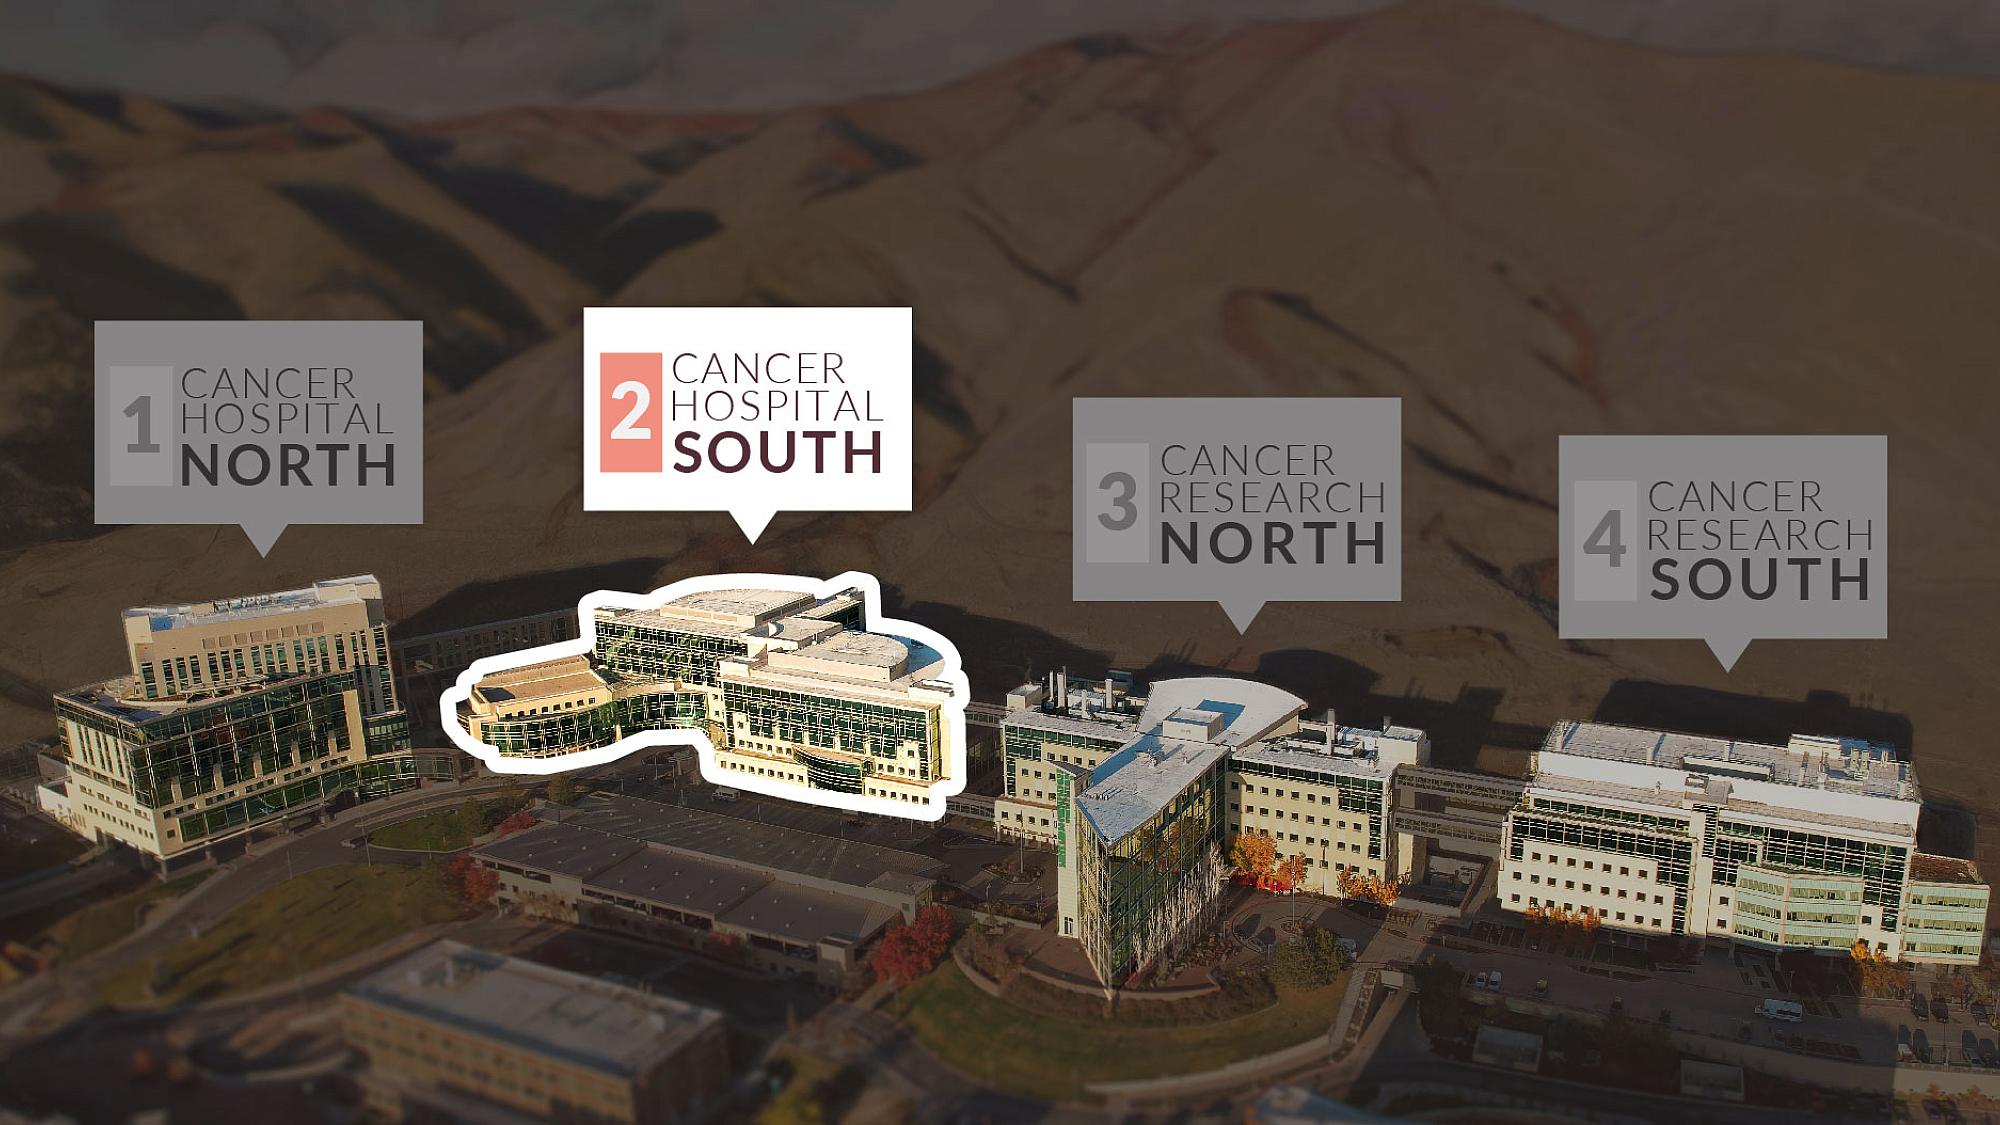 Huntsman Cancer Institute - Cancer Hospital South Building